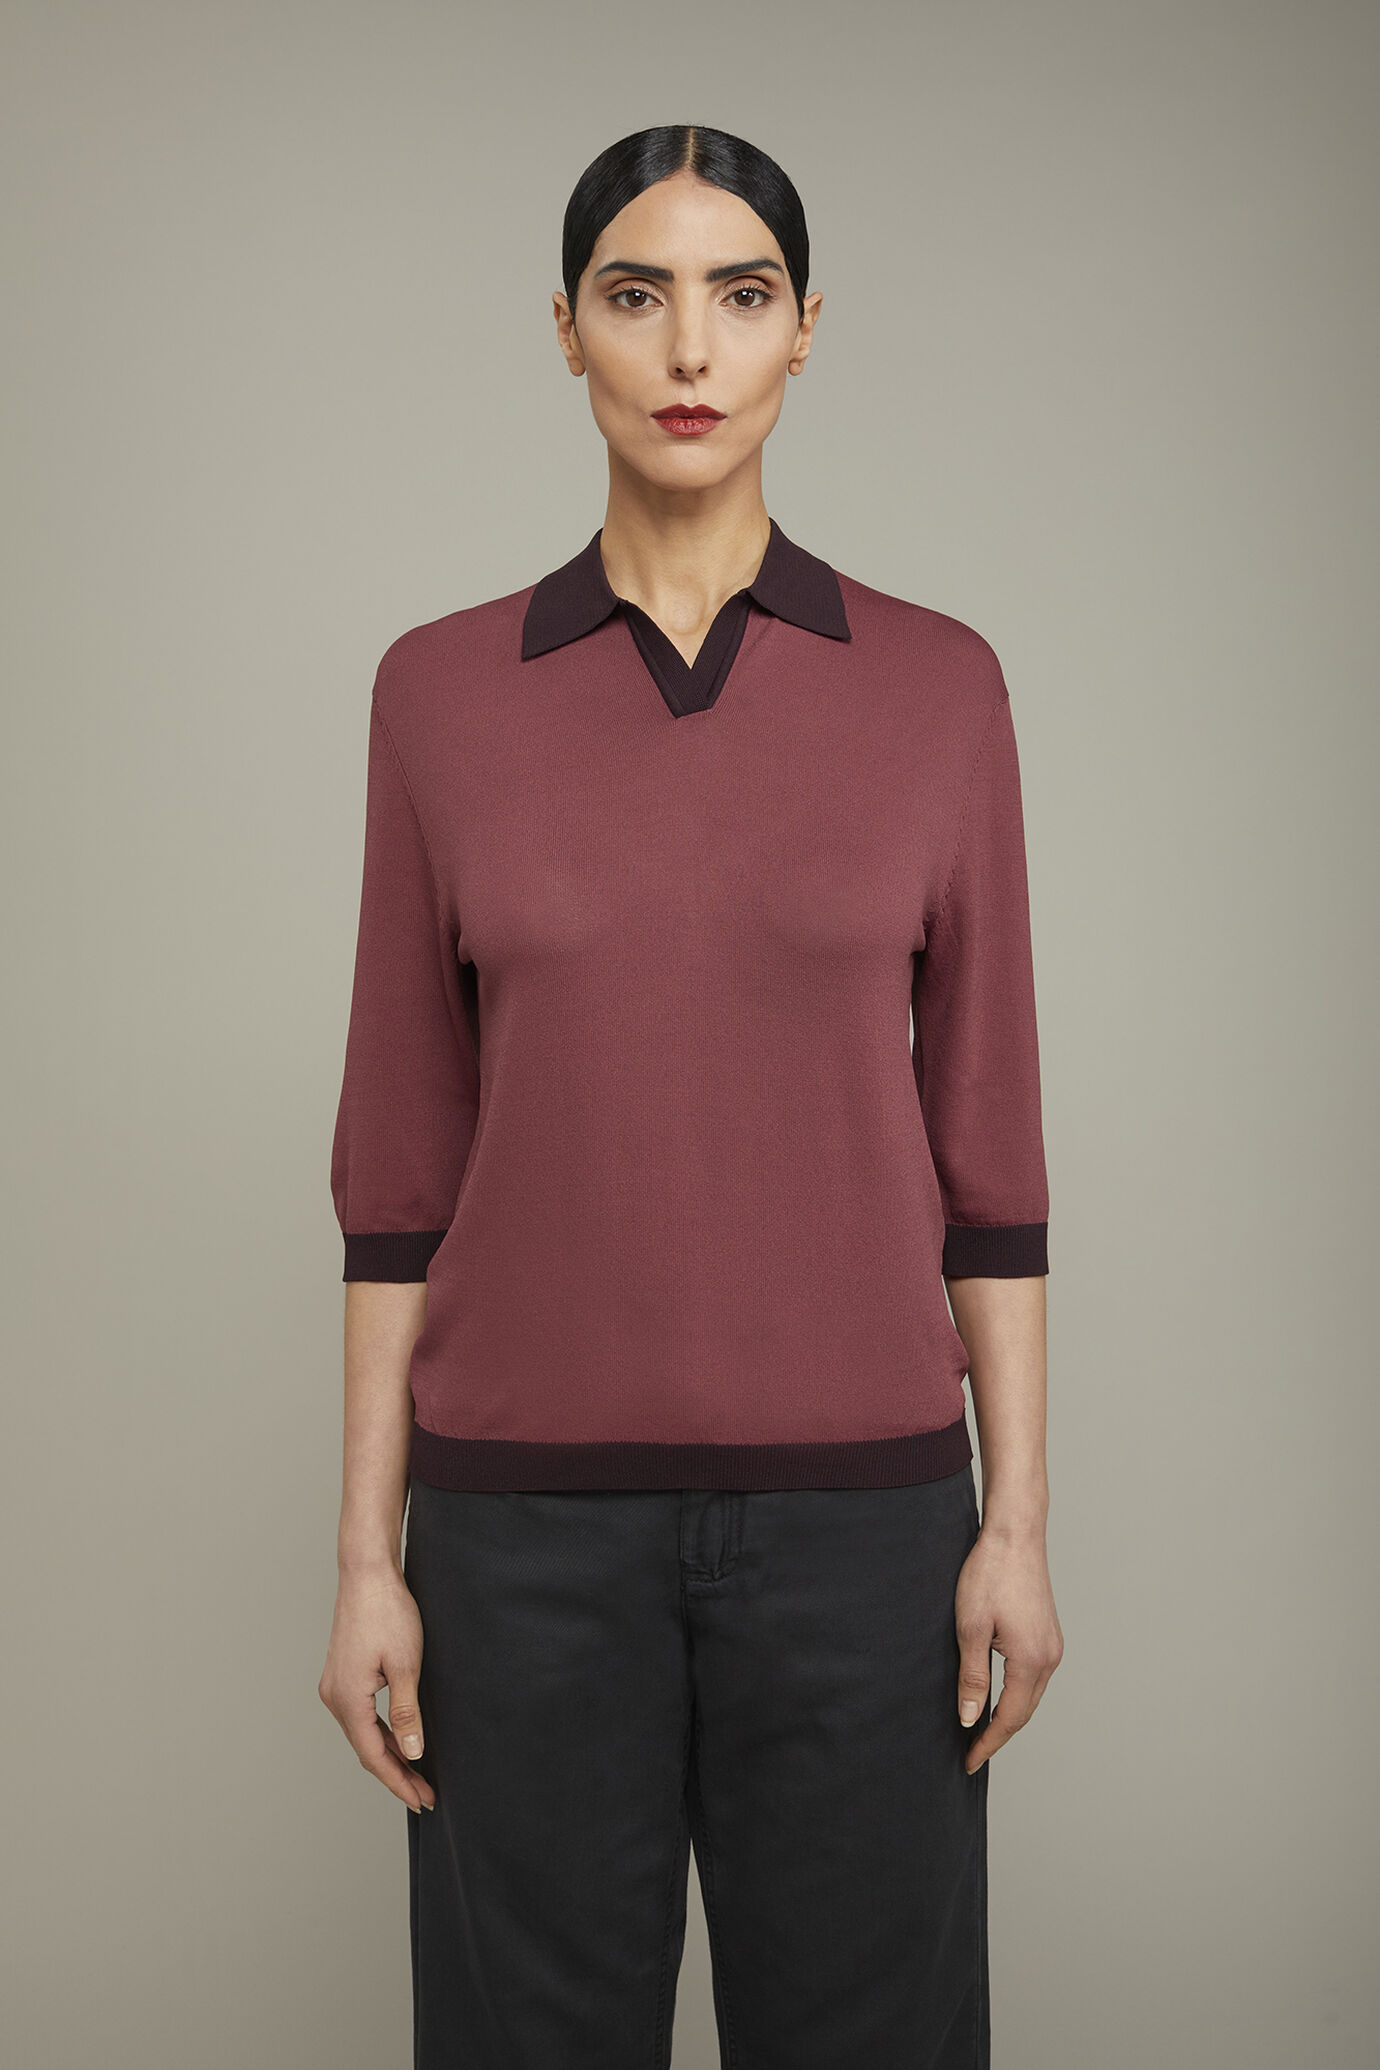 Damen-Poloshirt mit 3/4-Ärmeln in normaler Passform image number 2